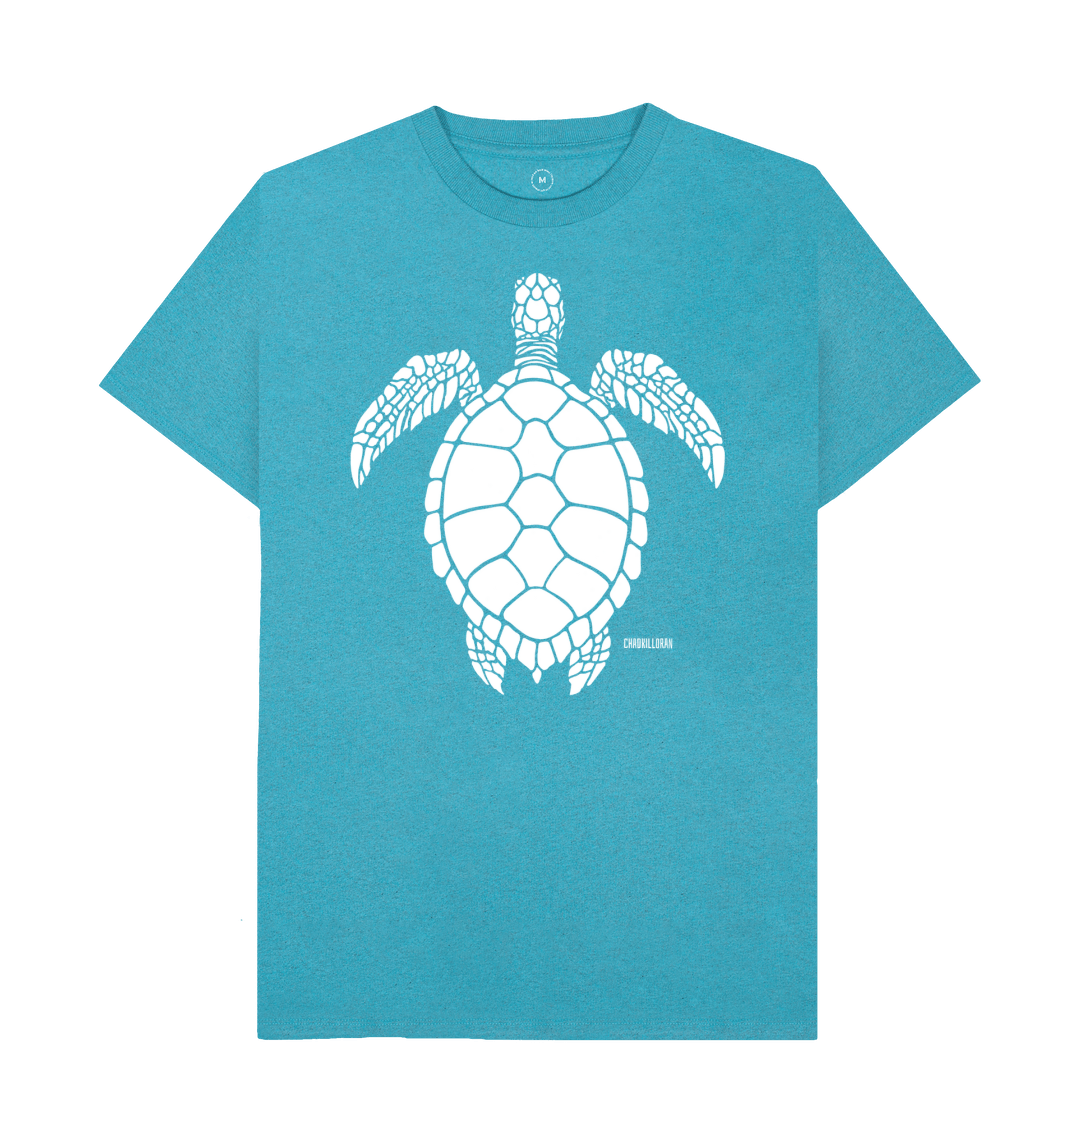 Sea Turtle Tee